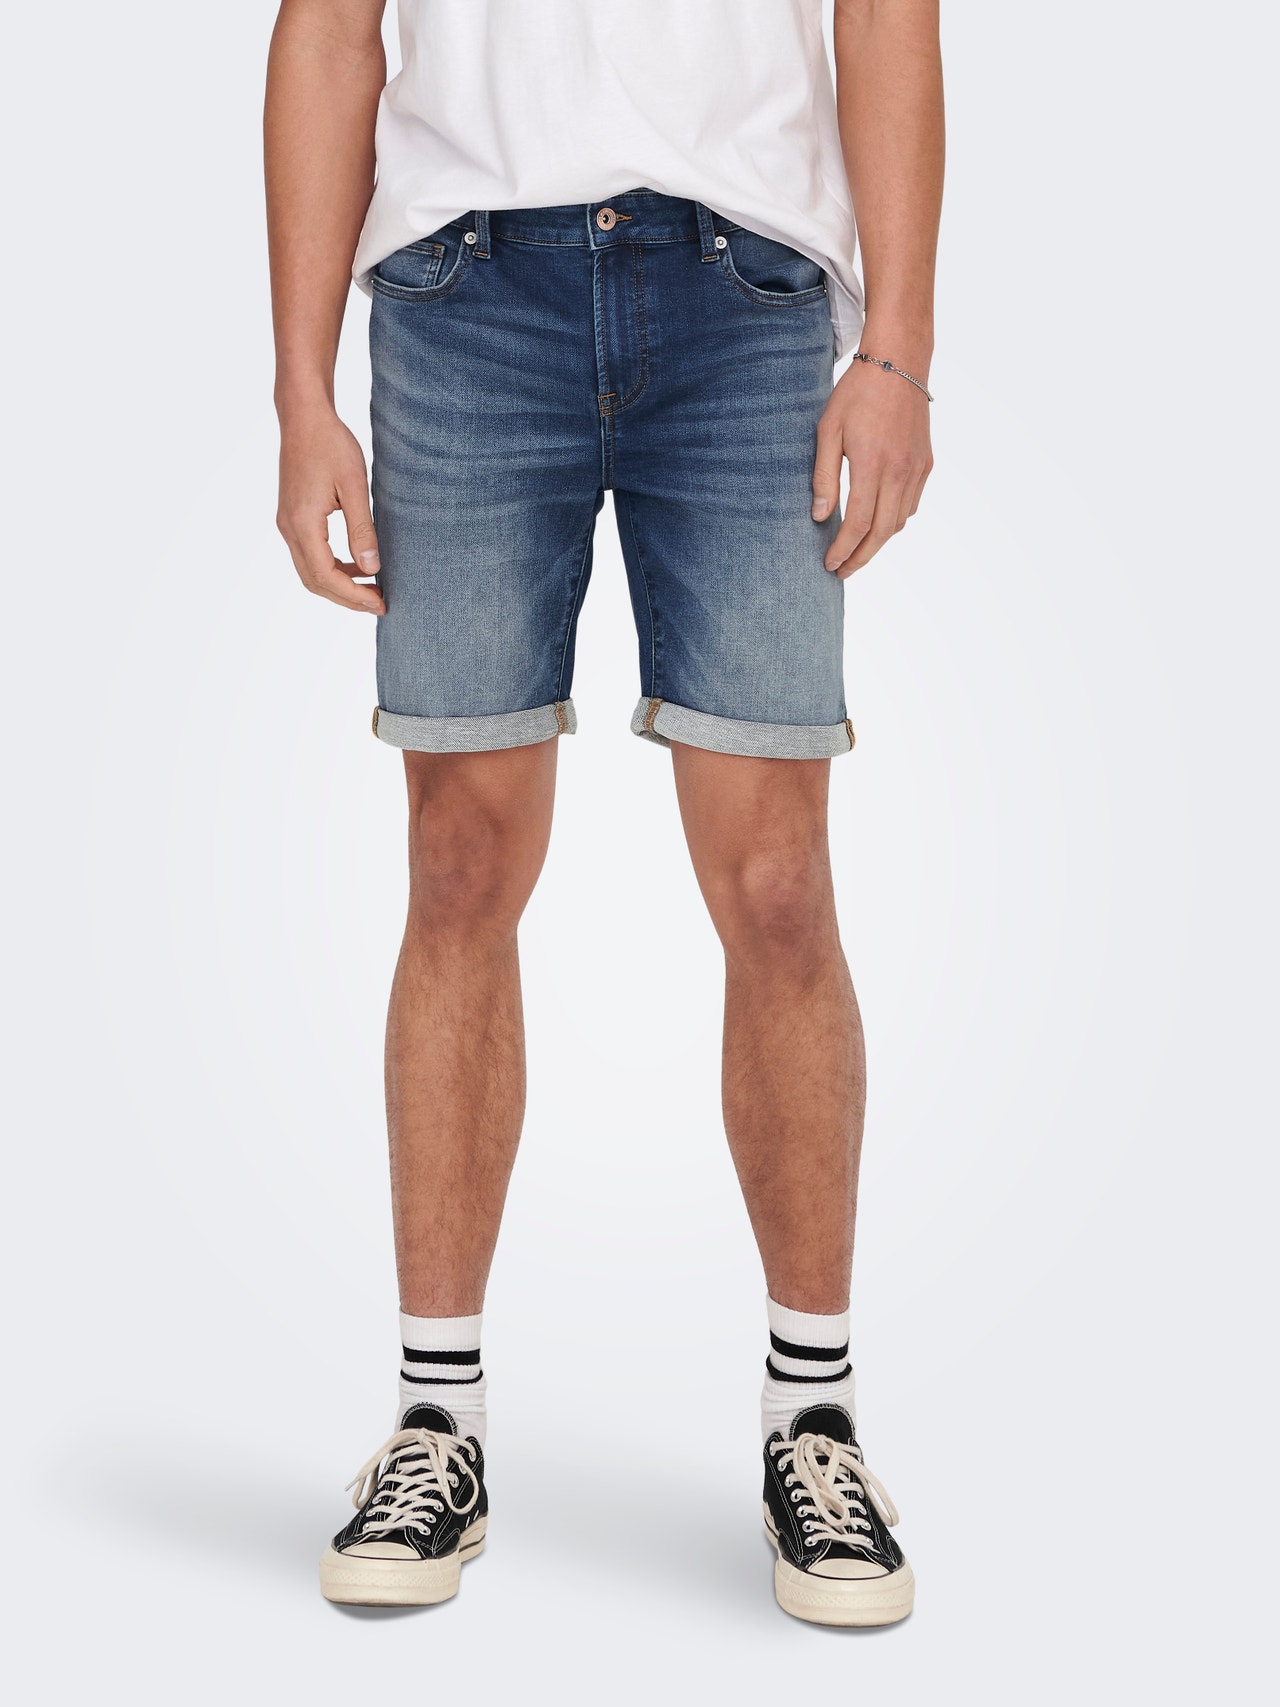 ONLY & SONS Regular Fit Mid waist Shorts -Dark Medium Blue Denim - 22025141